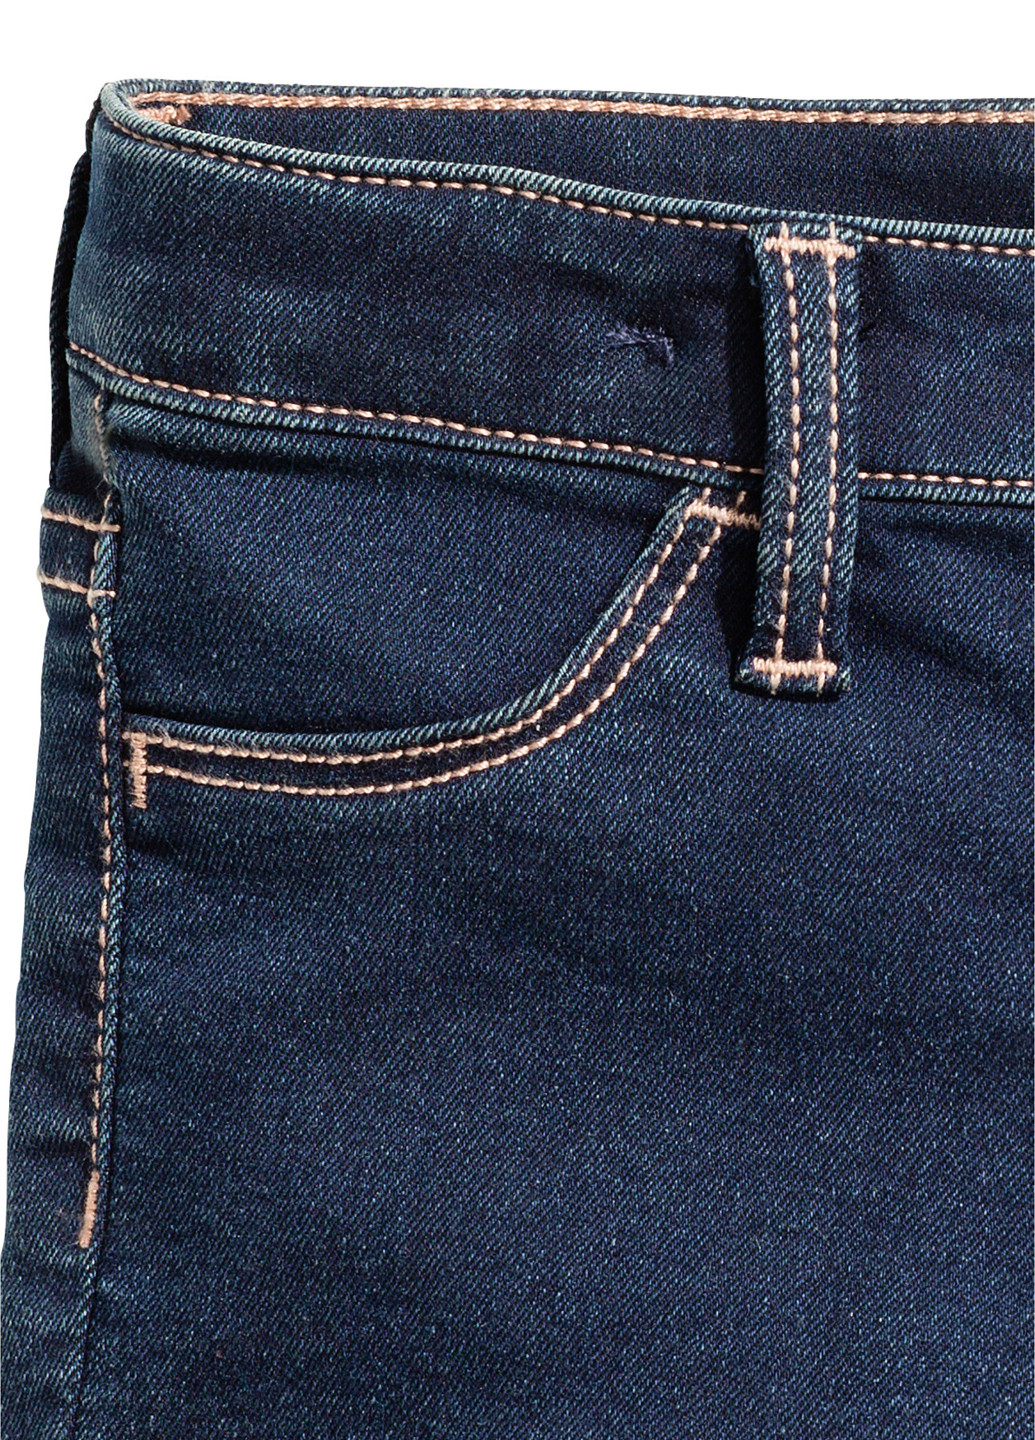 Шорты H&M тёмно-синие джинсовые